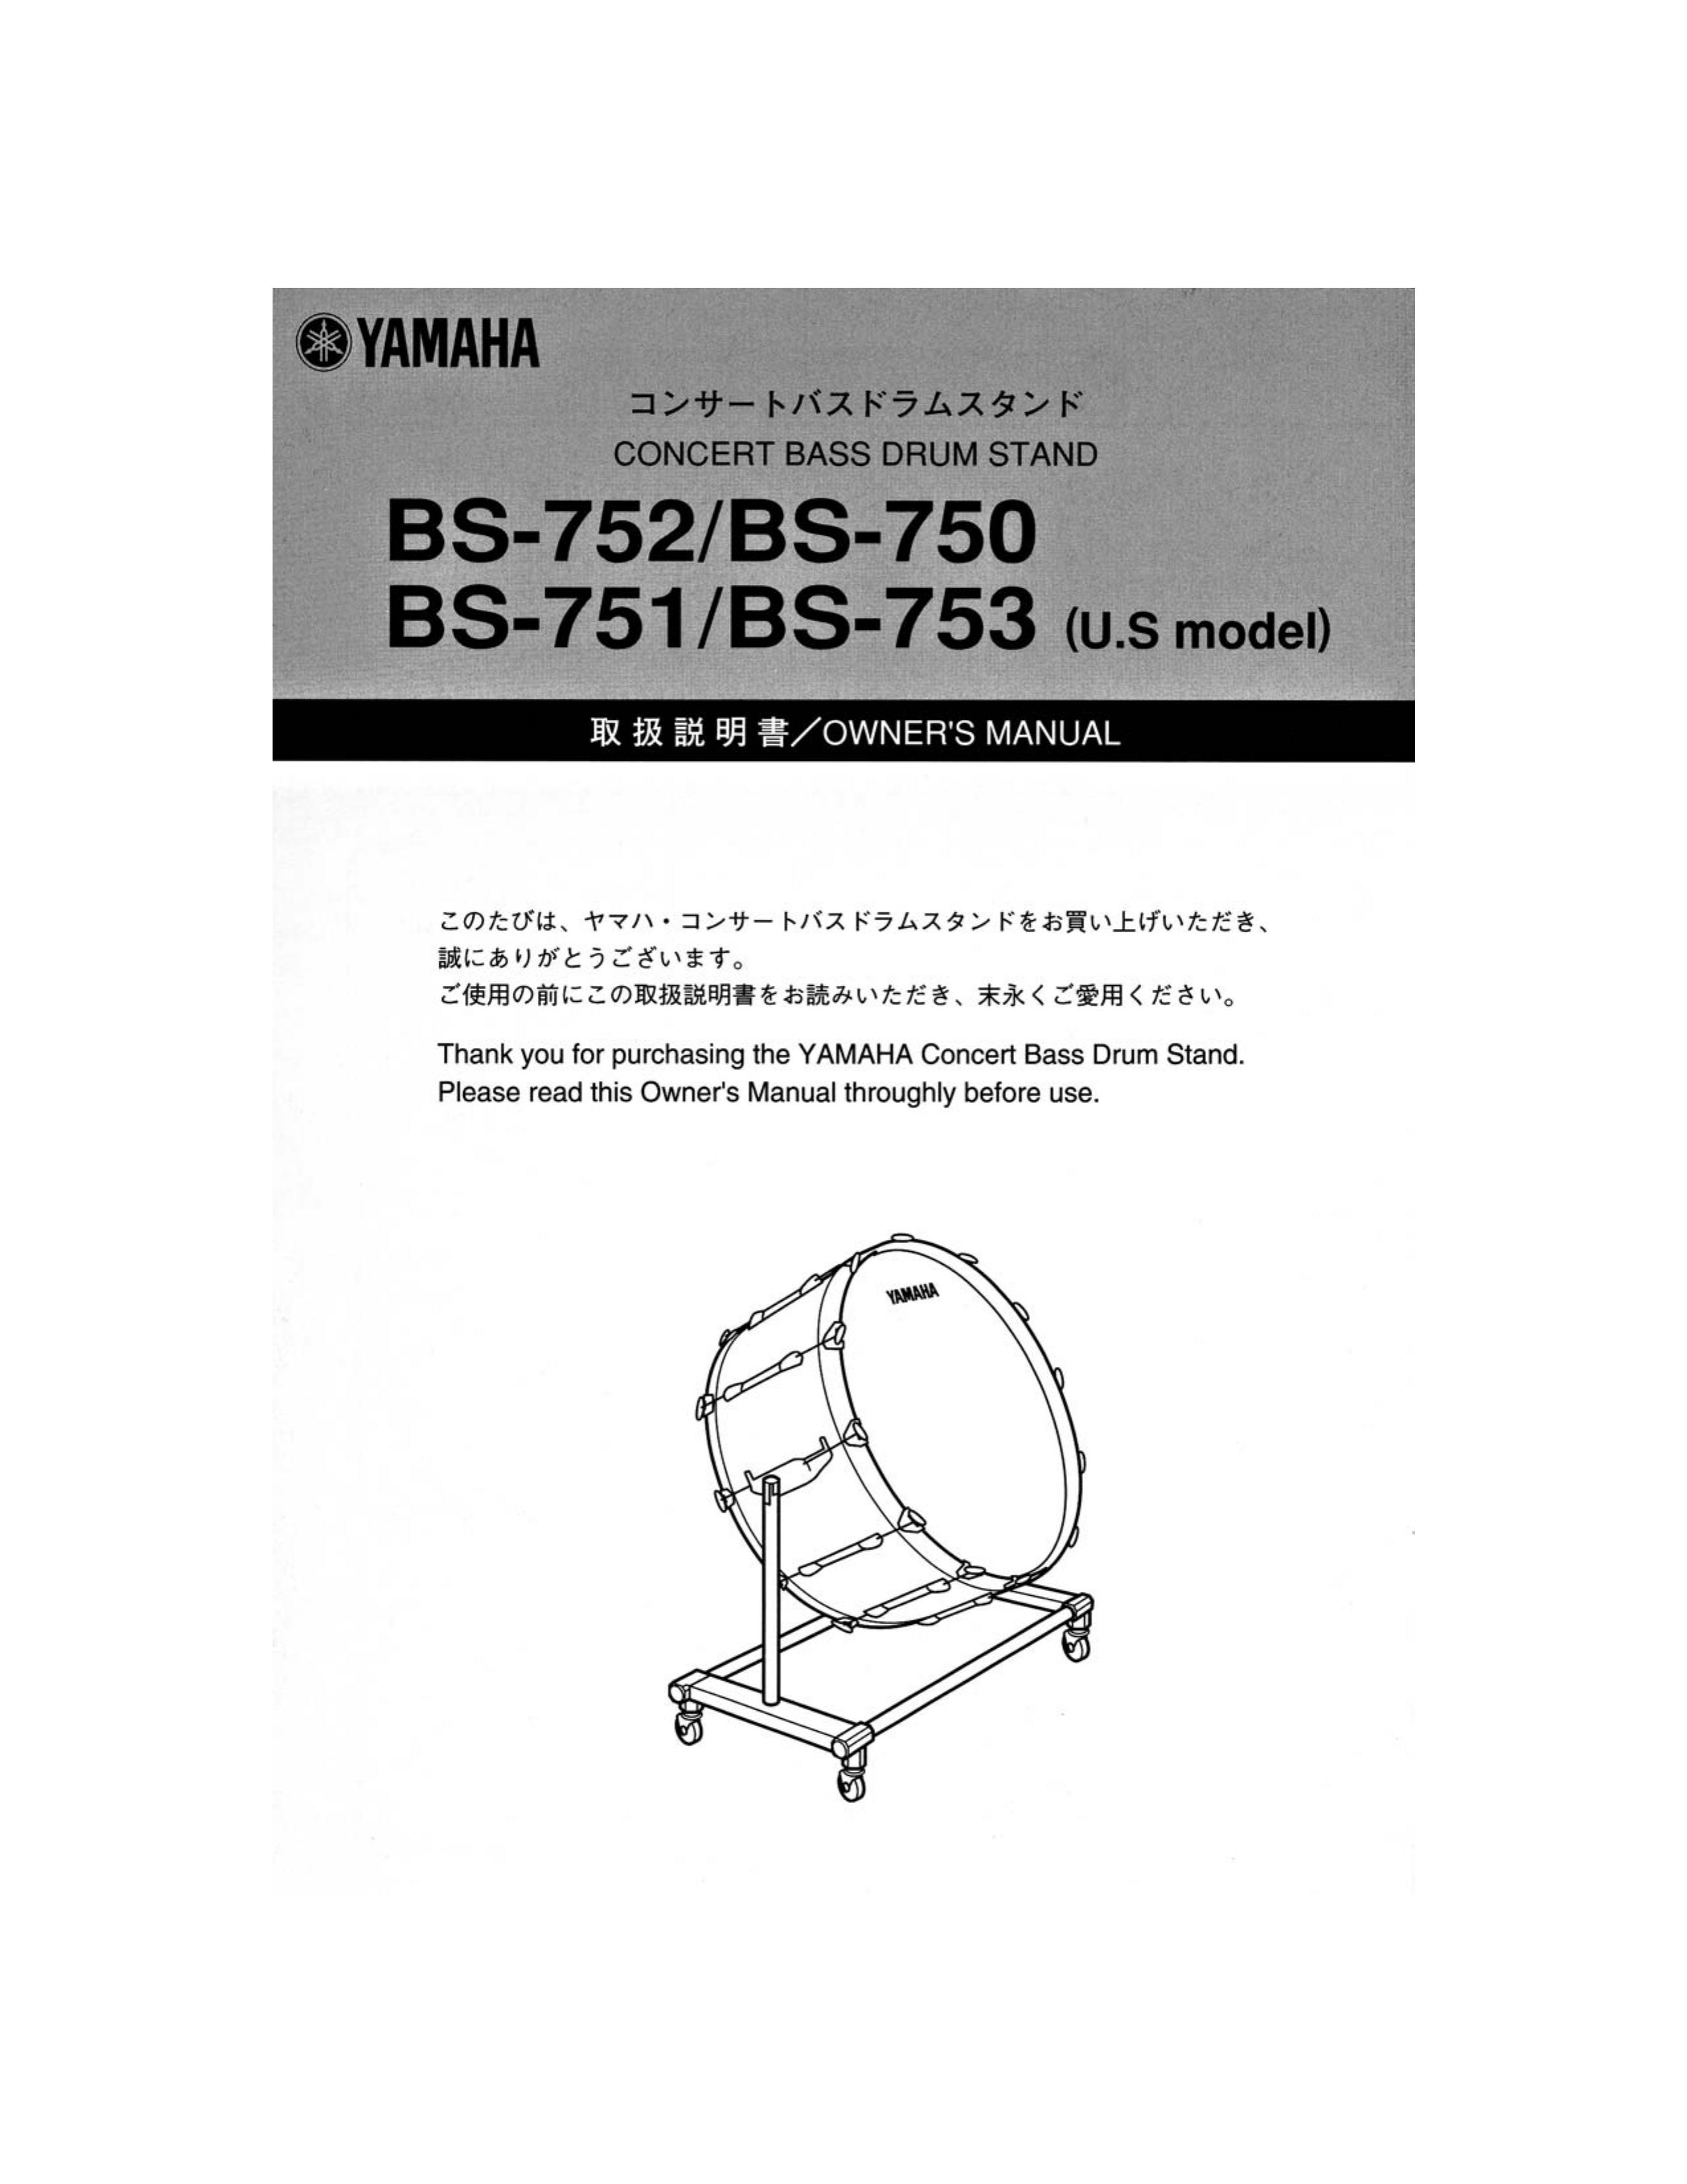 Yamaha BS-750 Drums User Manual